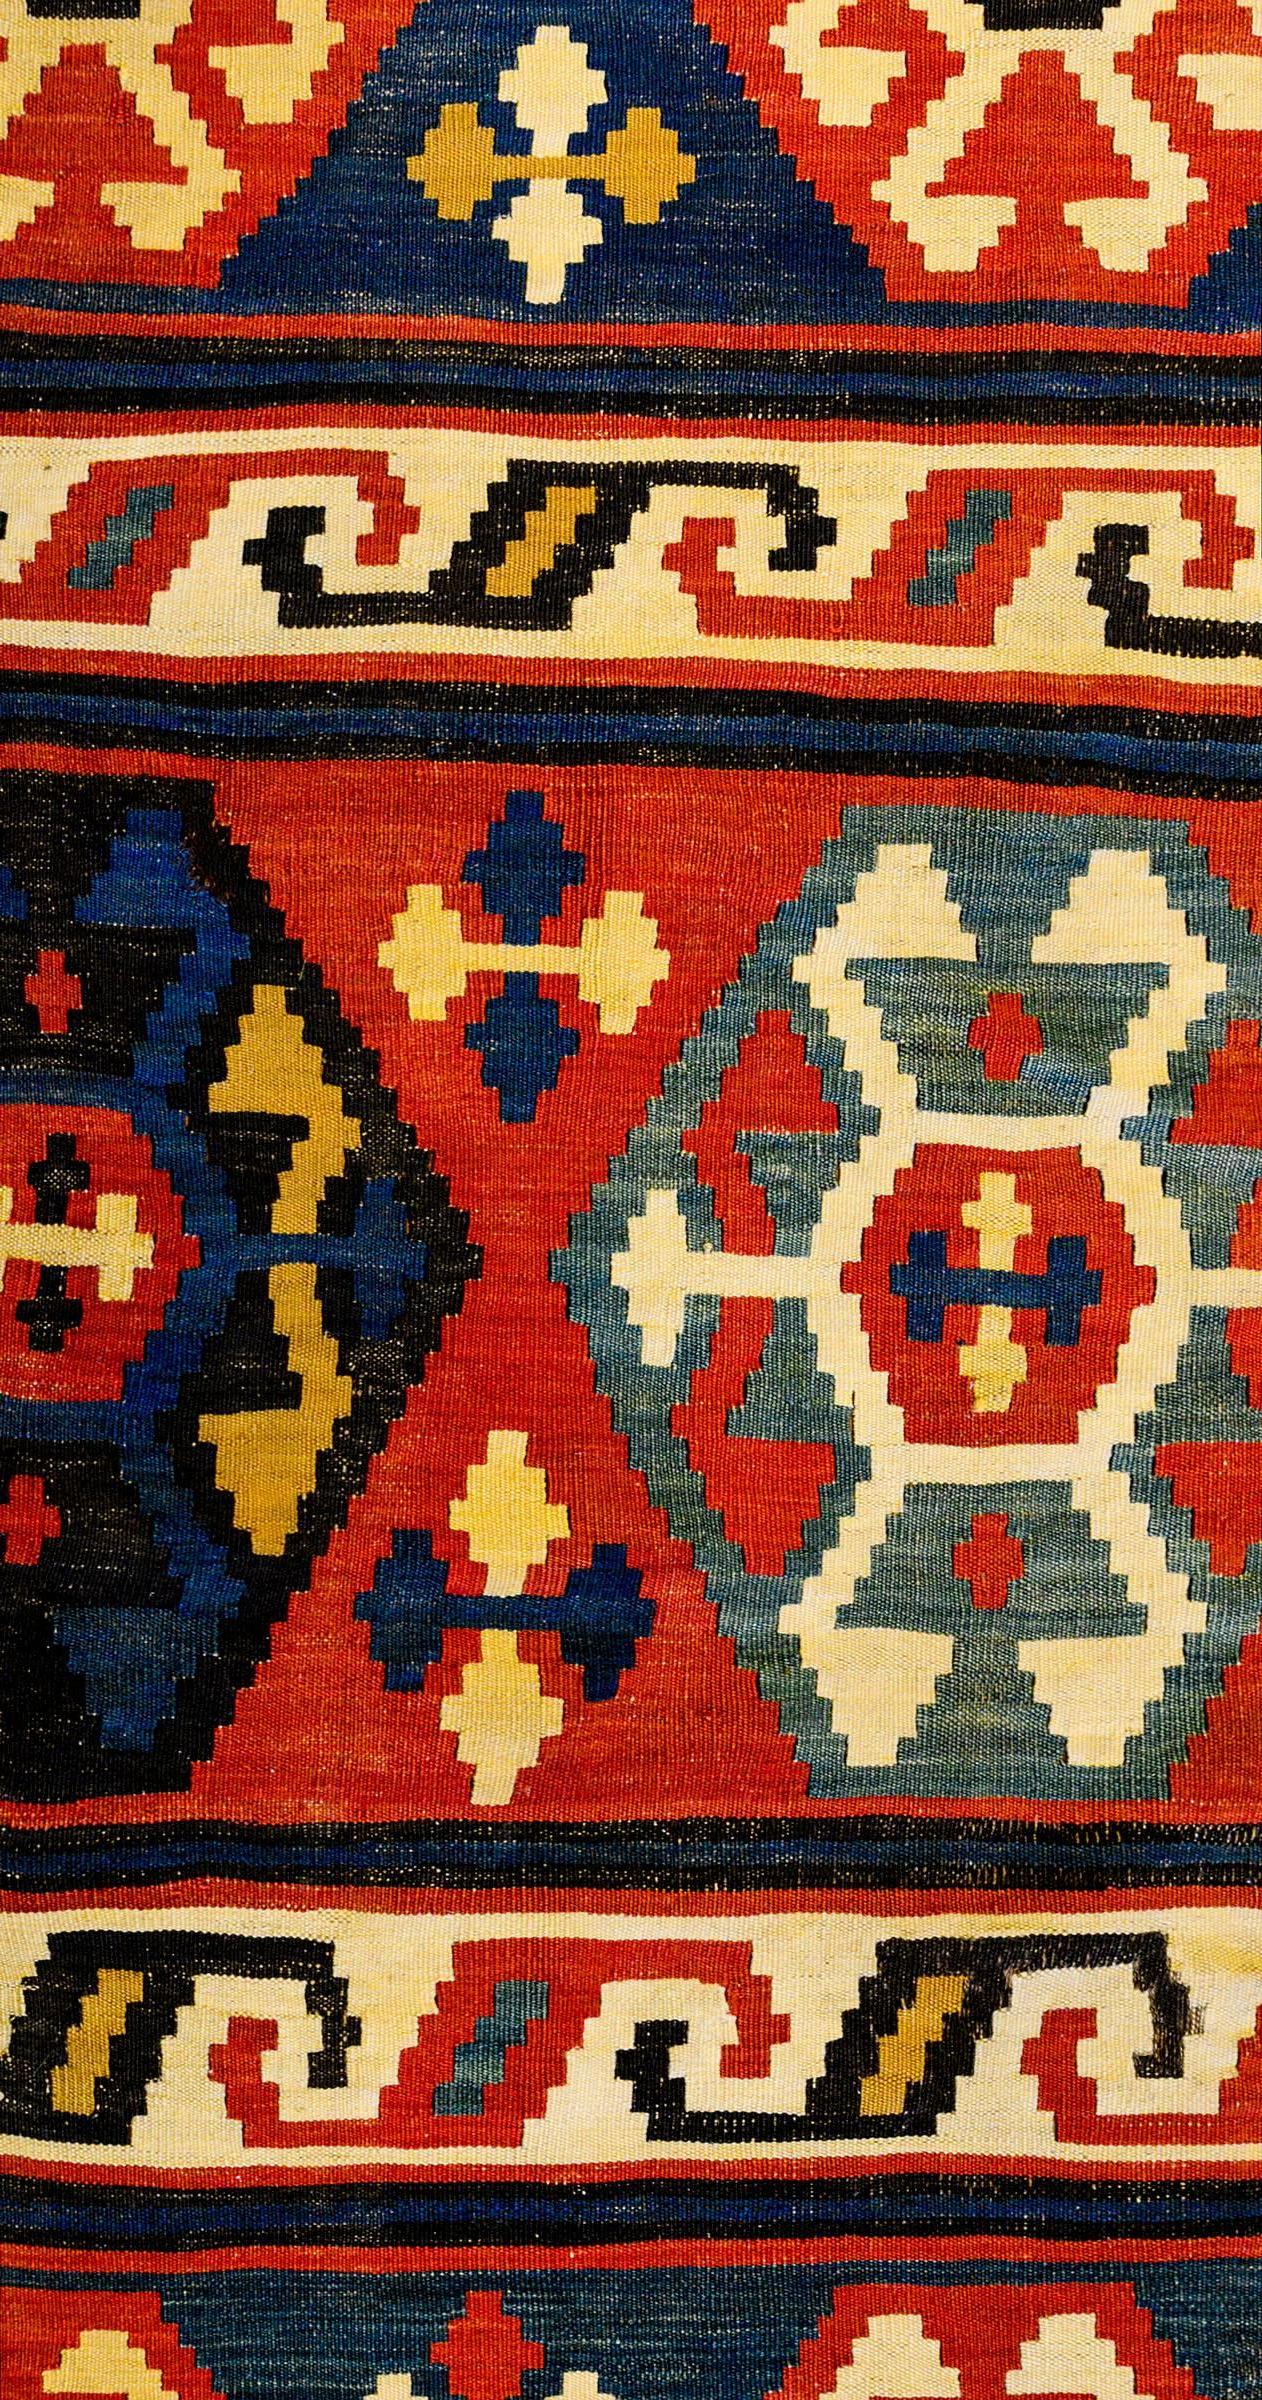 Ein aufregender kaukasischer Schrein-Kilim-Teppich aus der Mitte des 20. Jahrhunderts mit abwechselnden Streifen, die mehrfarbige hexagonale Formen auf karminrotem, indigoblauem und grünem Hintergrund sowie S-förmige Formen auf weißem Hintergrund